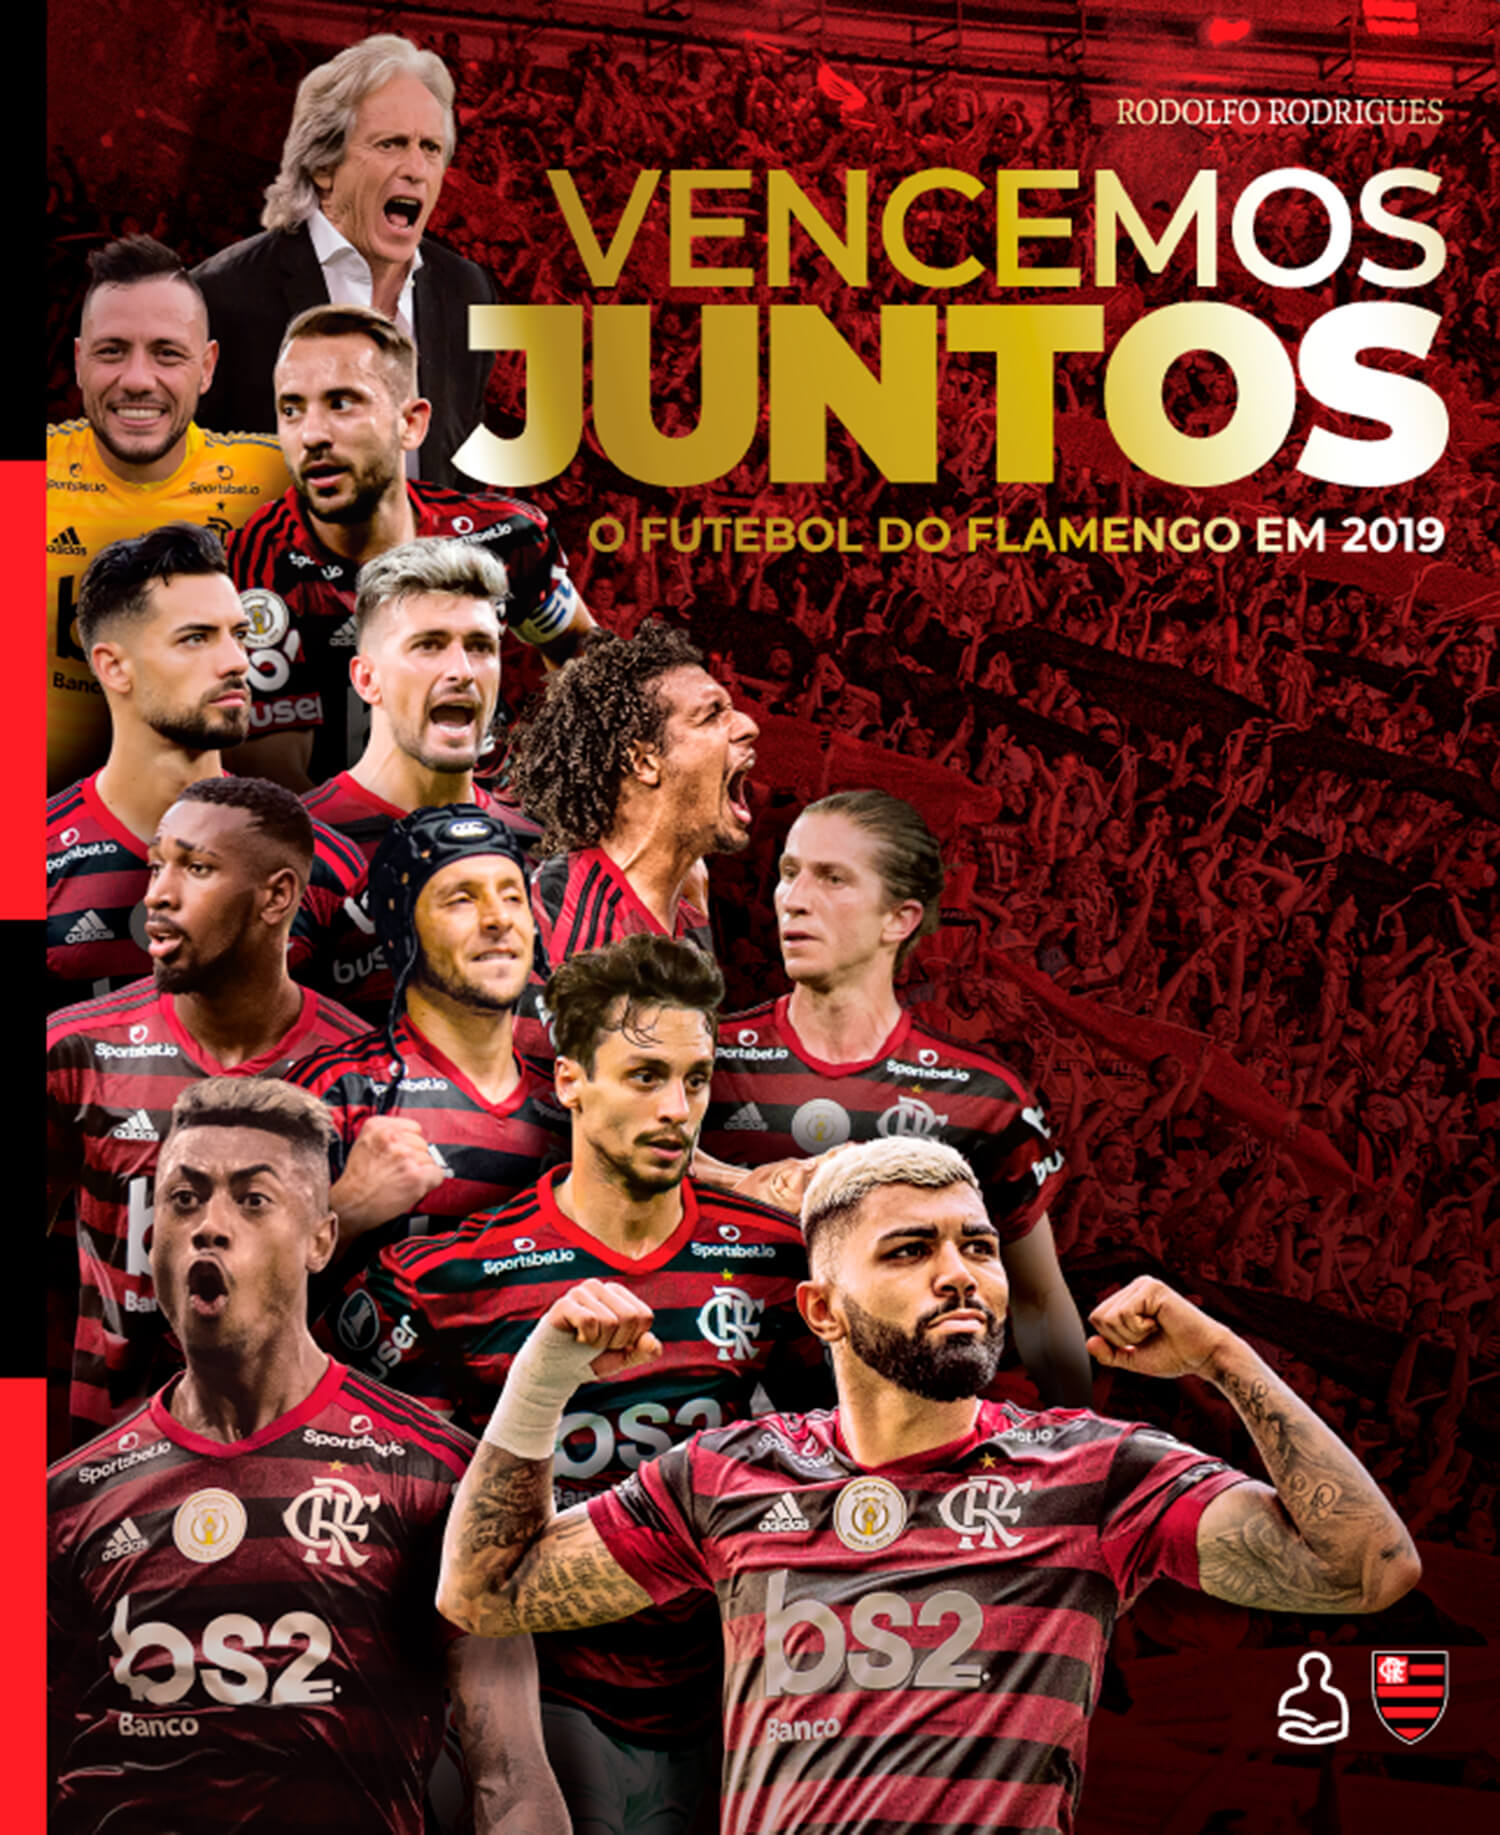 Capa do livro "Vencemos Juntos - O Futebol do Flamengo em 2019"